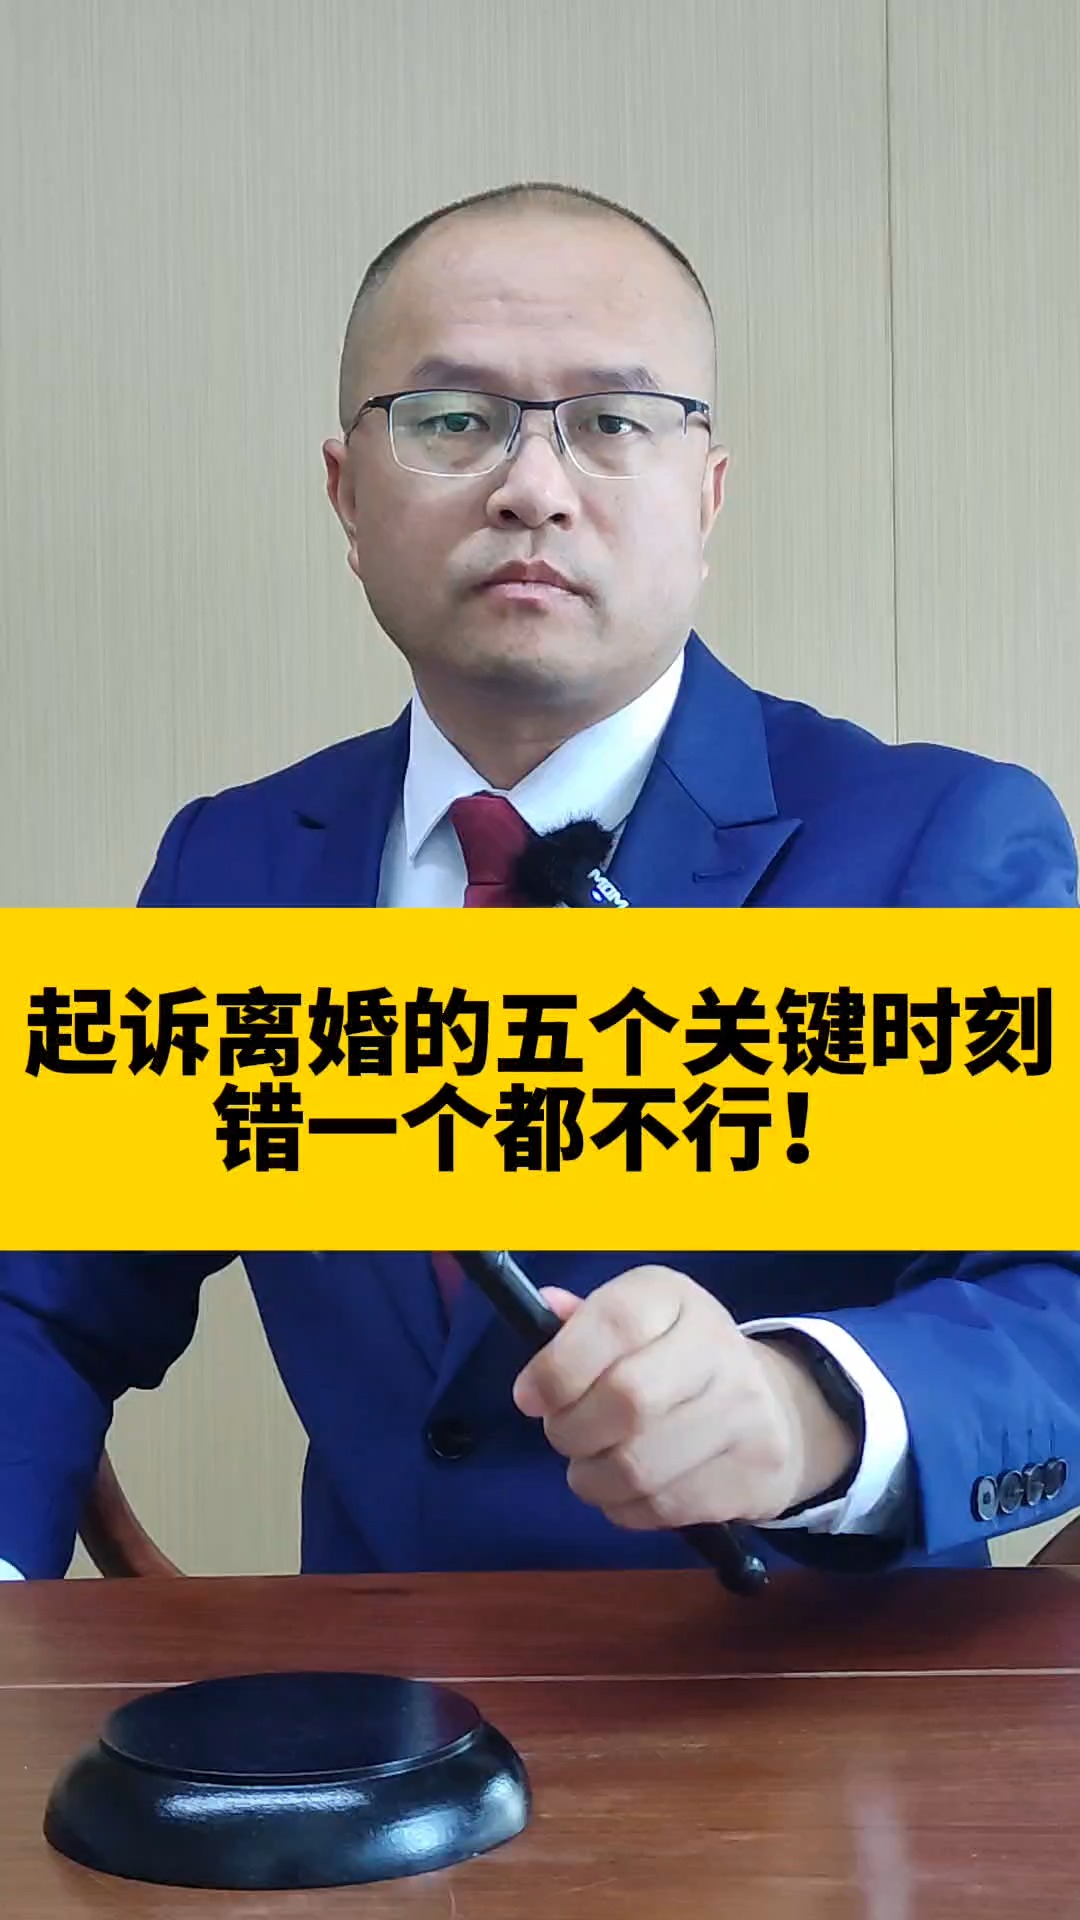 起诉离婚的五个关键时刻错一个都不行!#东莞律师  #东莞律师事务所  #东莞婚姻律师